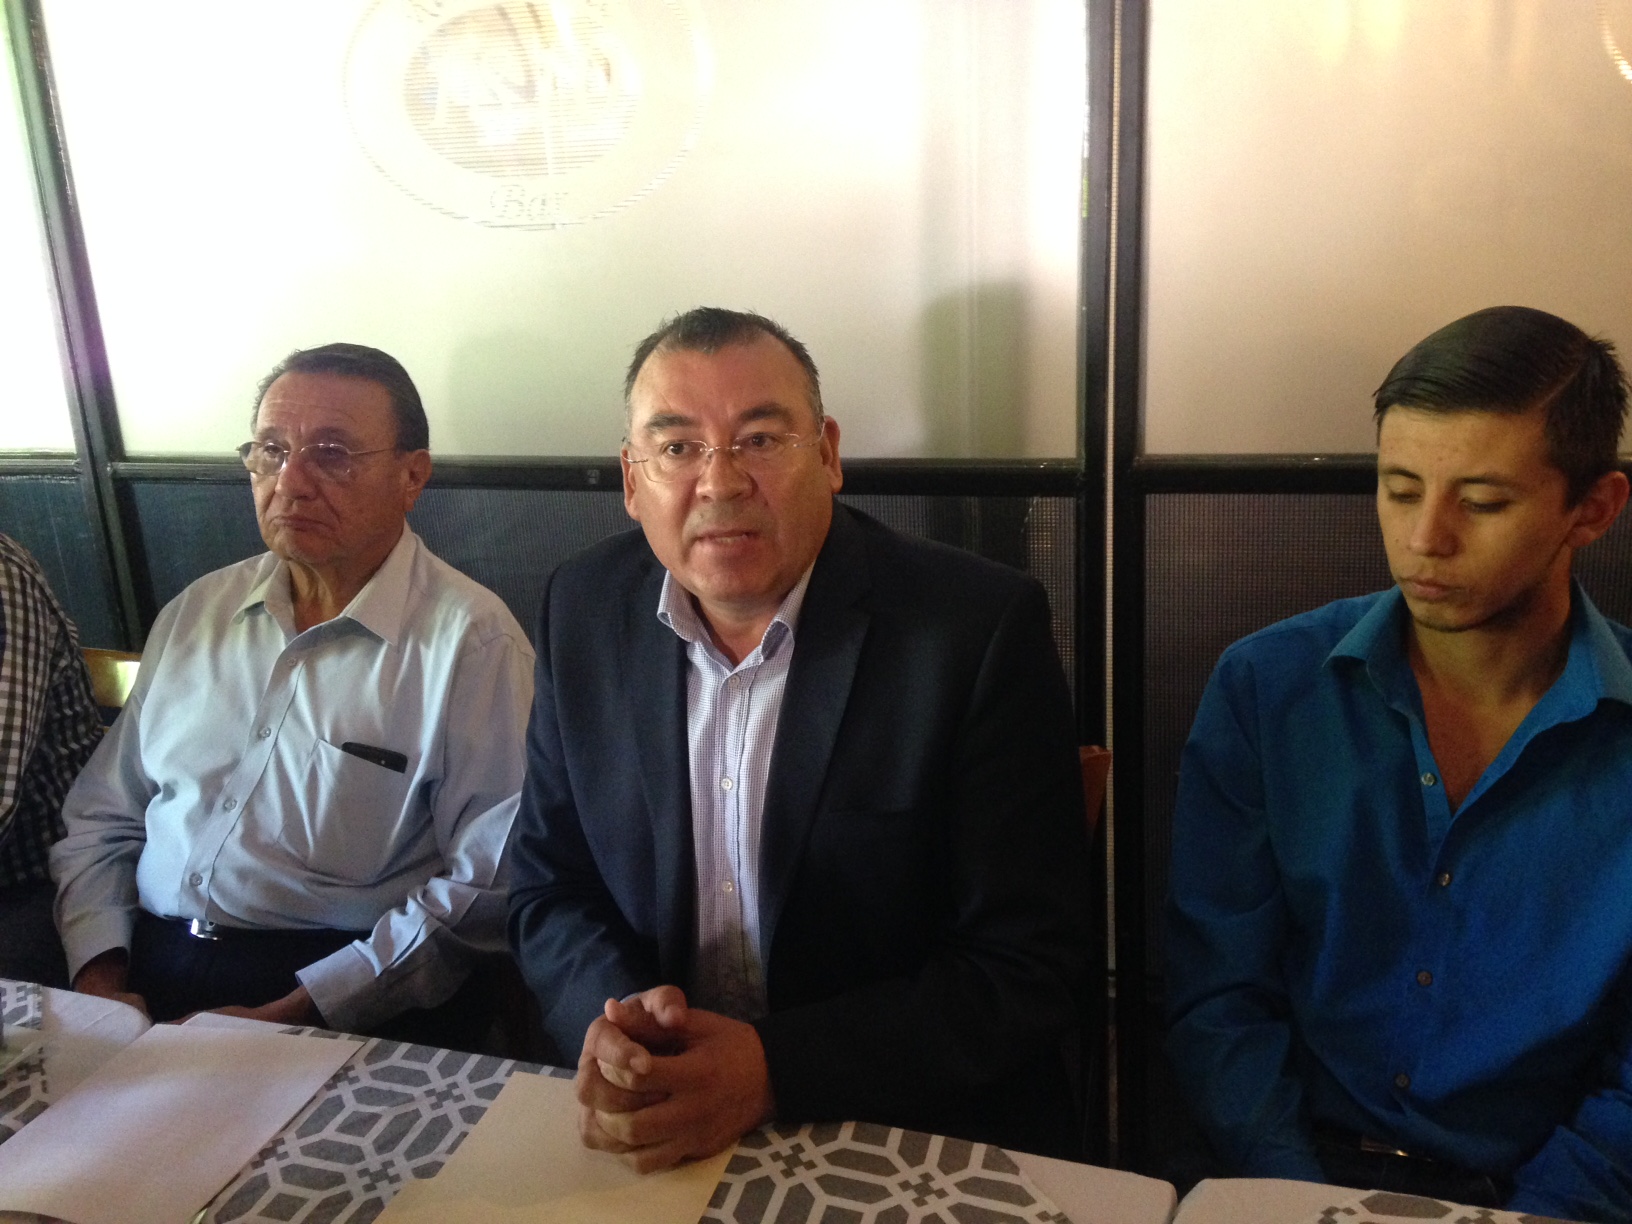  Intereses partidistas mueven petición de juicio político contra Marcos Aguilar: Adolfo Camacho